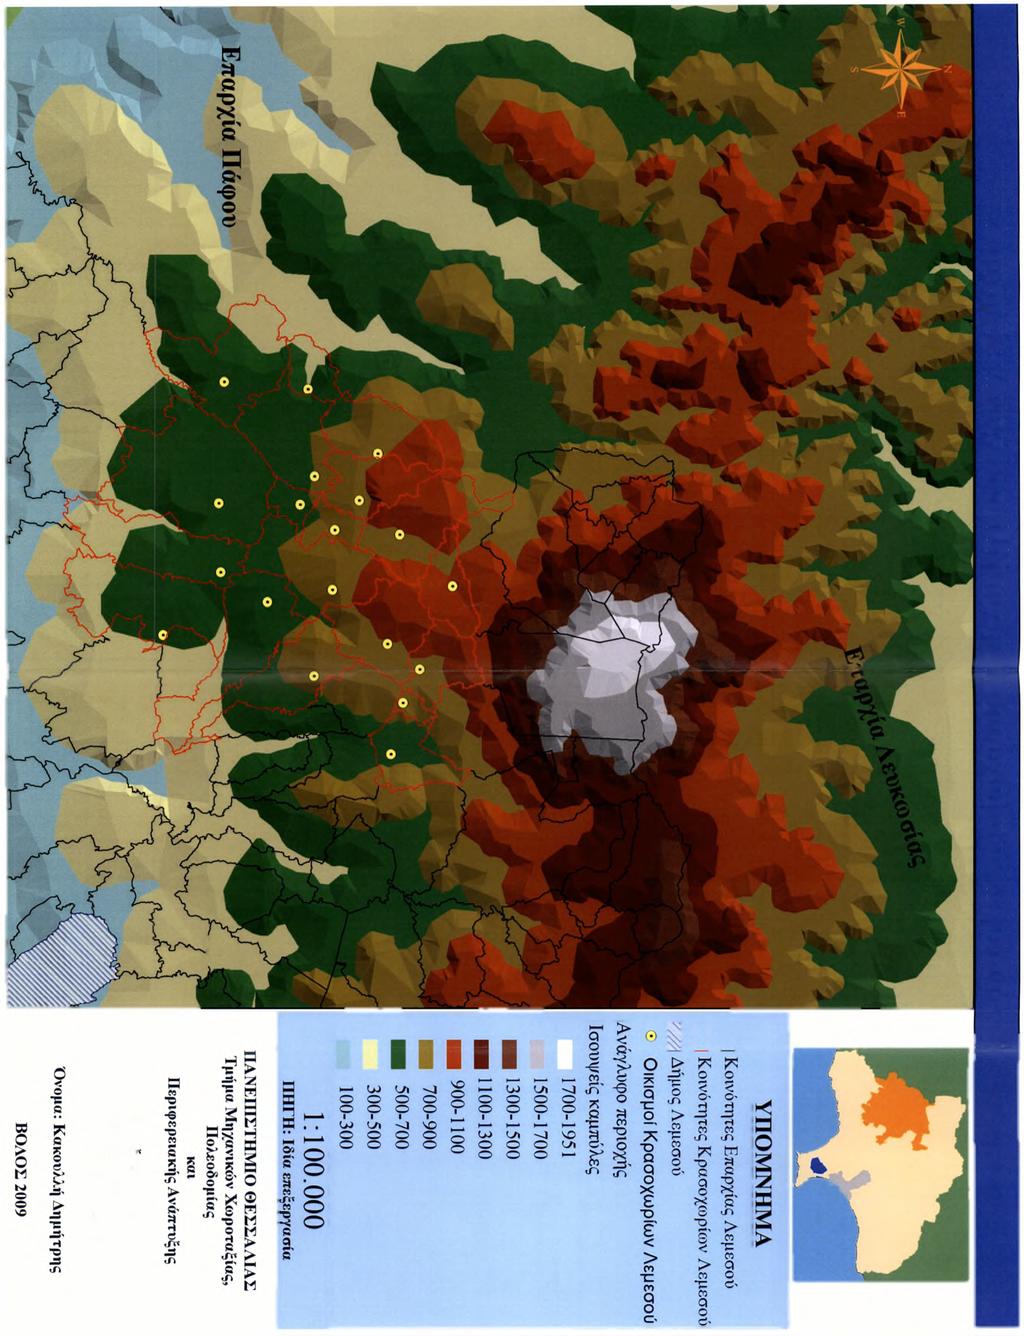 Χάρτης 2: Ανάγλυφο Περιοχής Κρασοχωρίων Λεμεσού Χ ω ρ ική